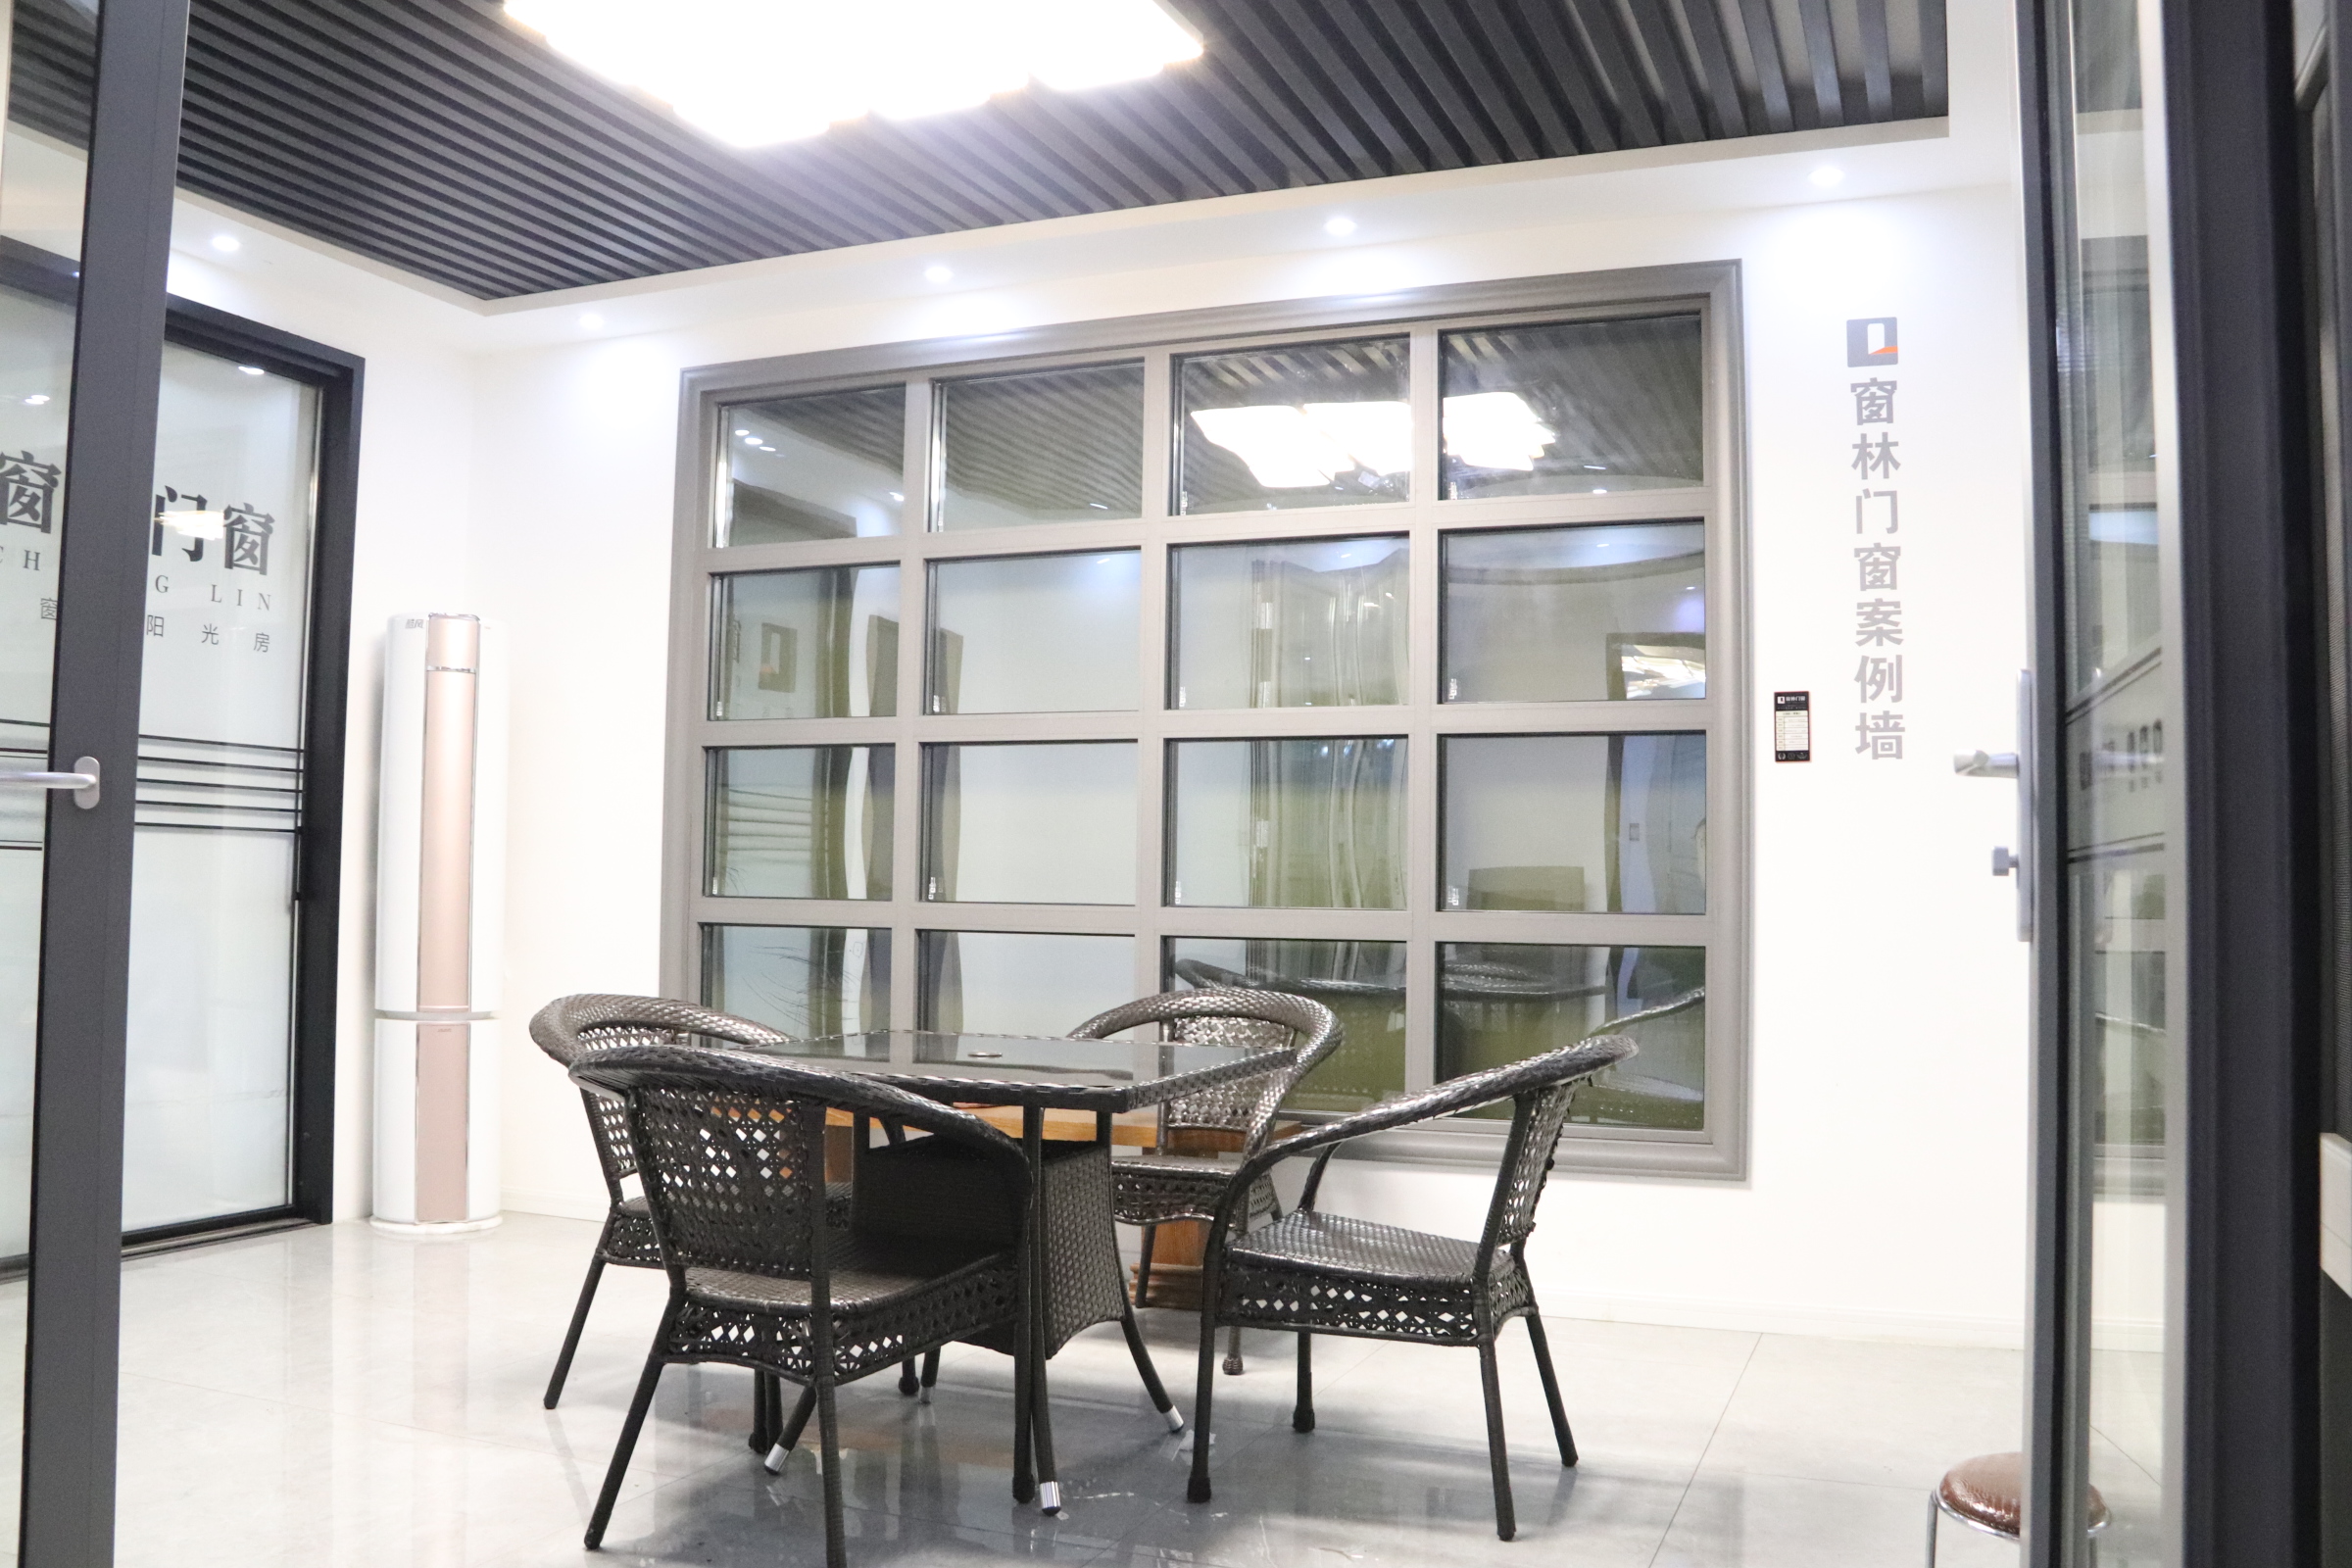 走近上海窗林门窗湖北运营中心做最适合消费者的门窗系统